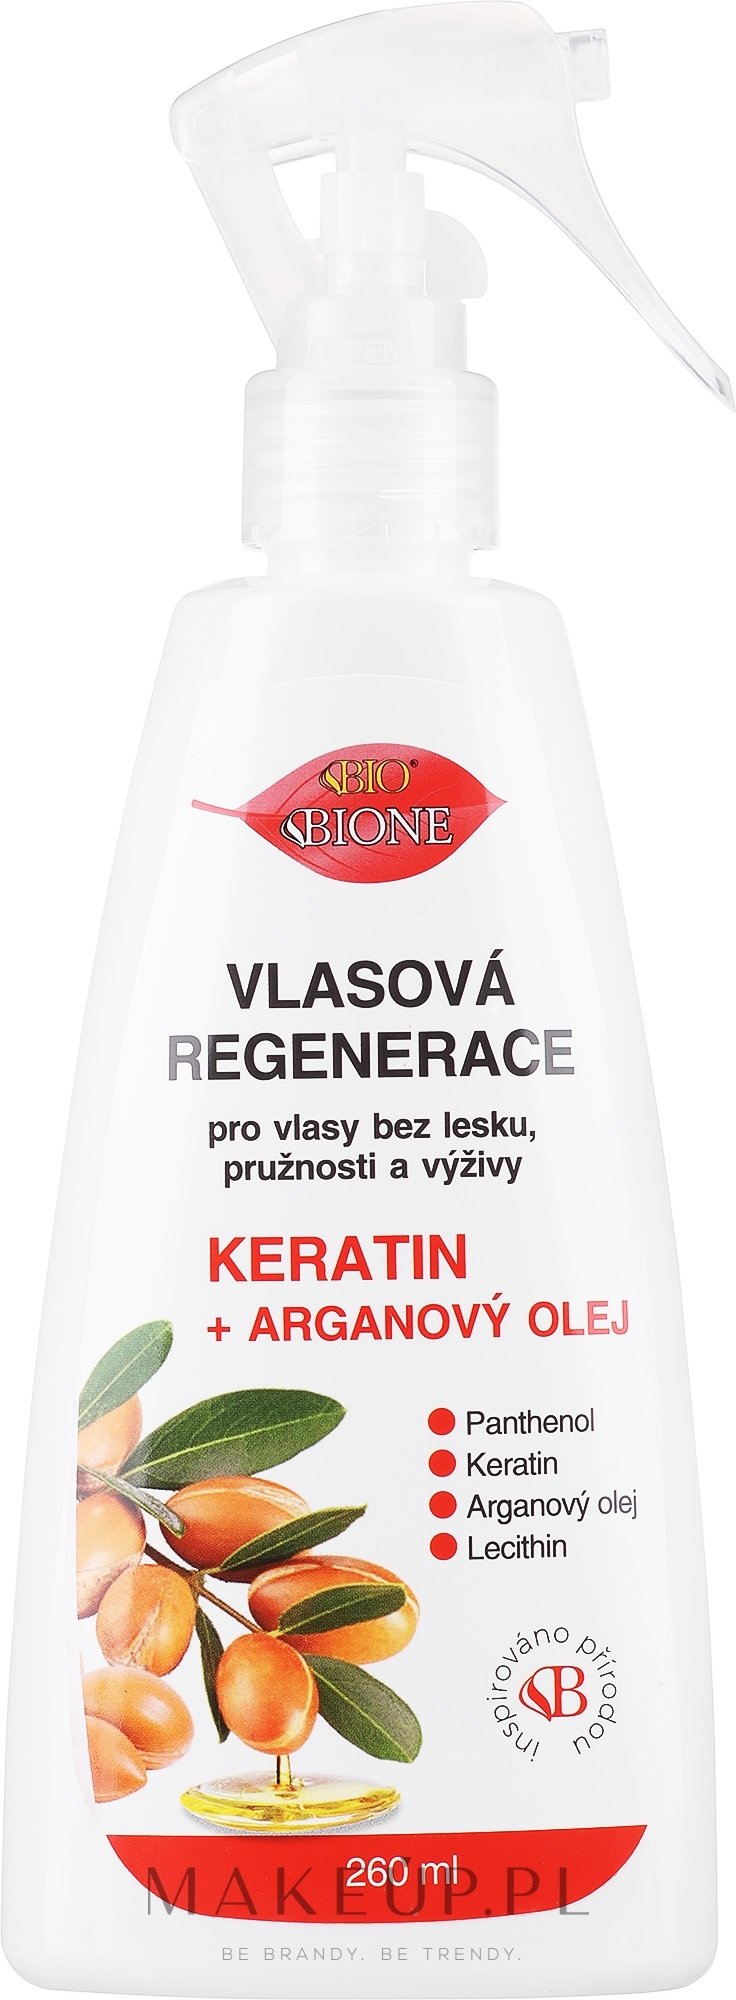 Keratynowy spray regenerujący do włosów - Bione Cosmetics Keratin + Argan Oil Hair Regeneration With Panthenol — Zdjęcie 260 ml